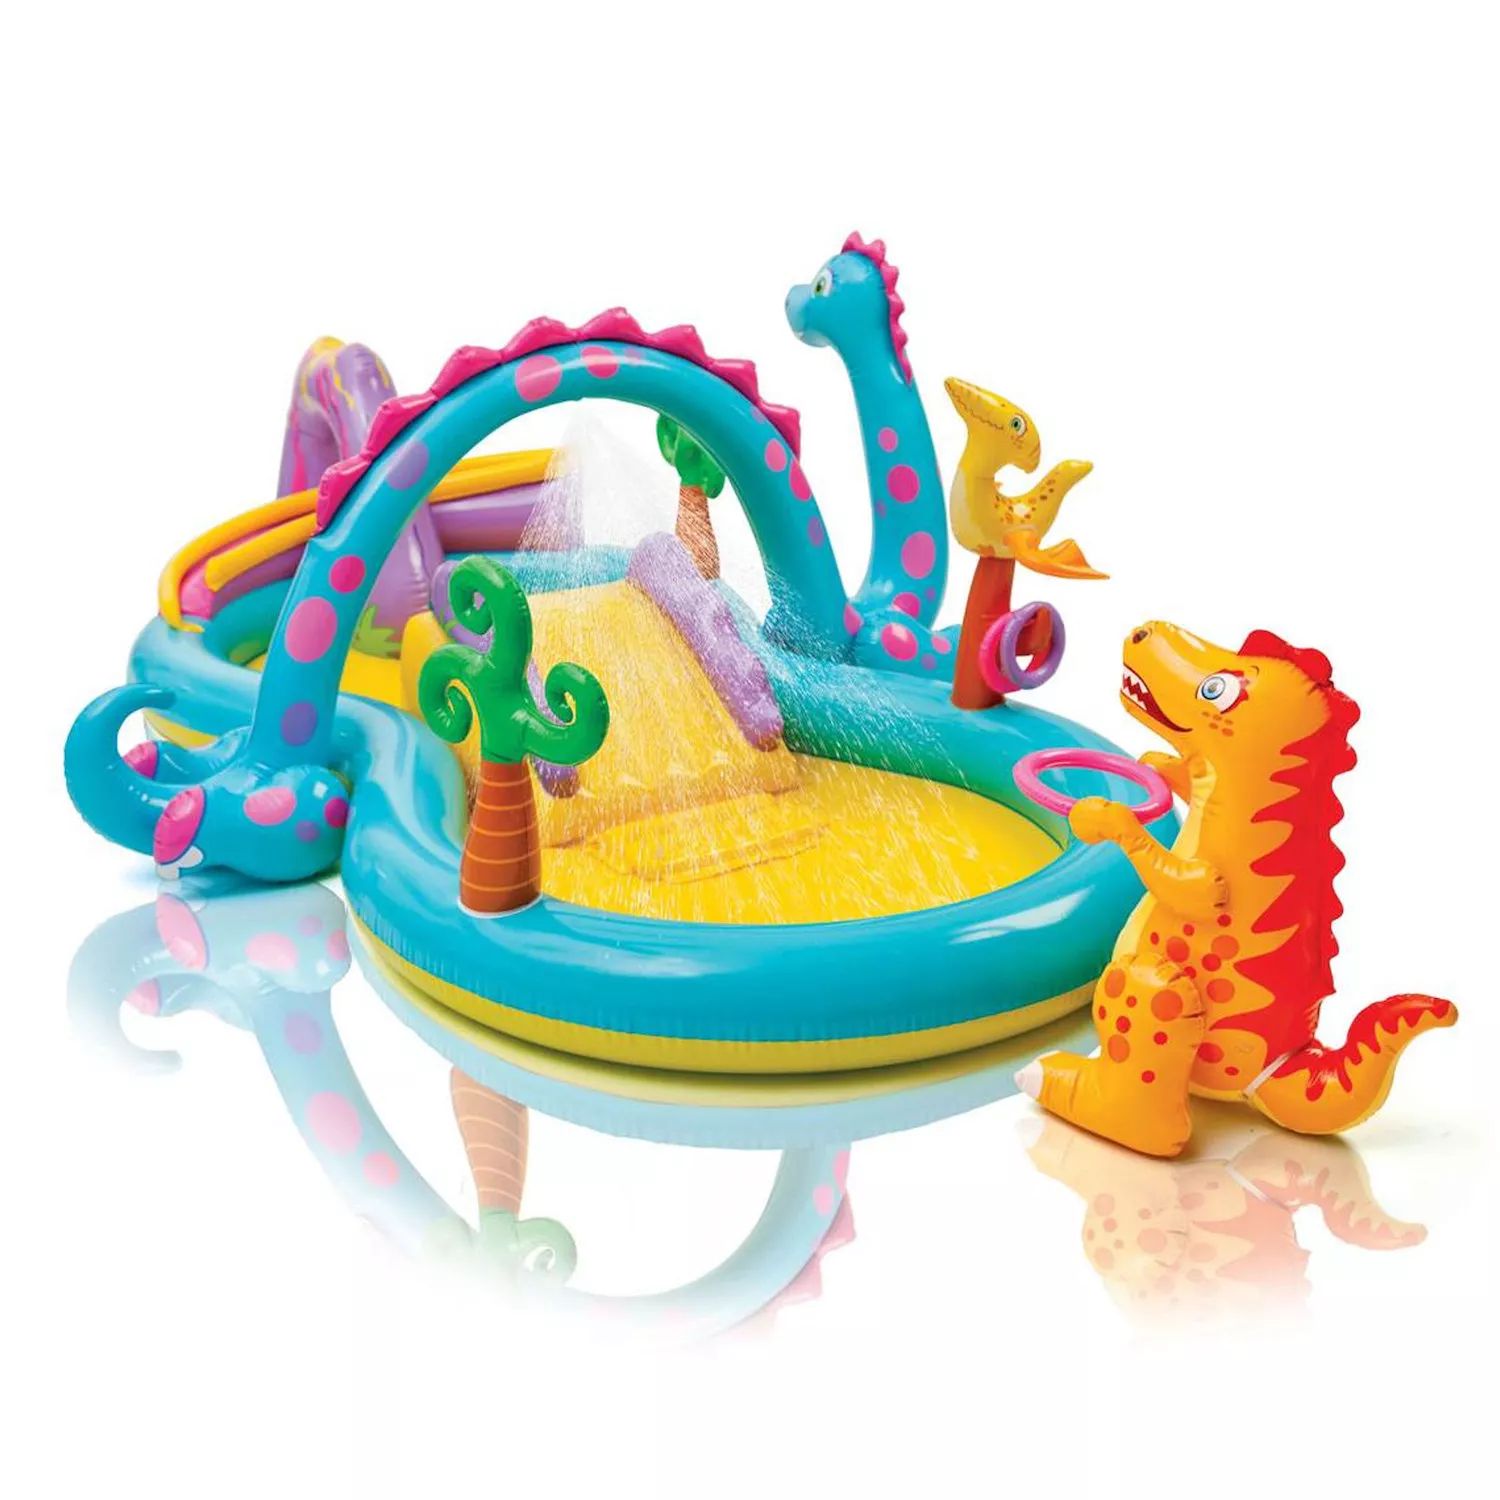 Детский надувной бассейн Intex Dinoland и надувной детский бассейн на заднем дворе с океаном Intex intex бассейн dinoland с горкой разноцветный